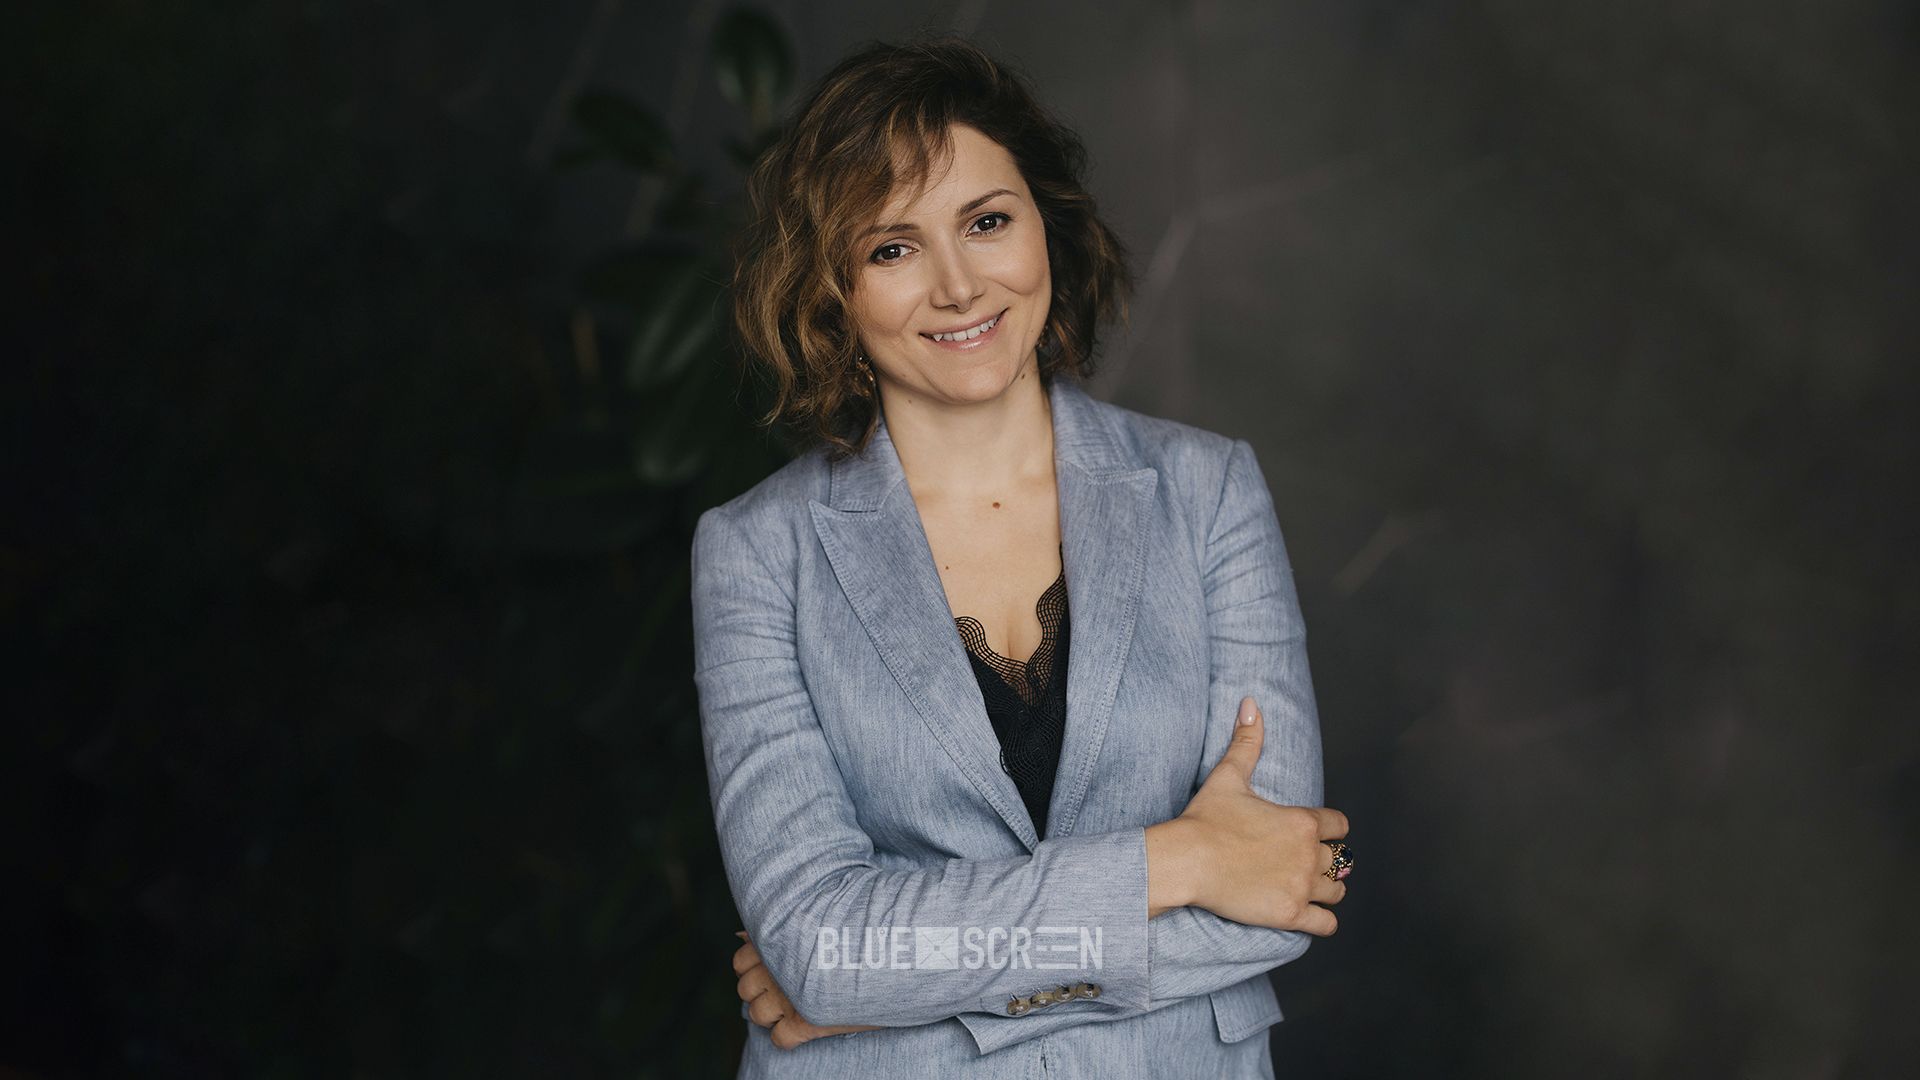  Елена Бондарь, CEO Wellbeing Company, эксперт по разработке и внедрению программ корпоративного благополучия в Украине, странах Восточной Европы и Центральной Азии.